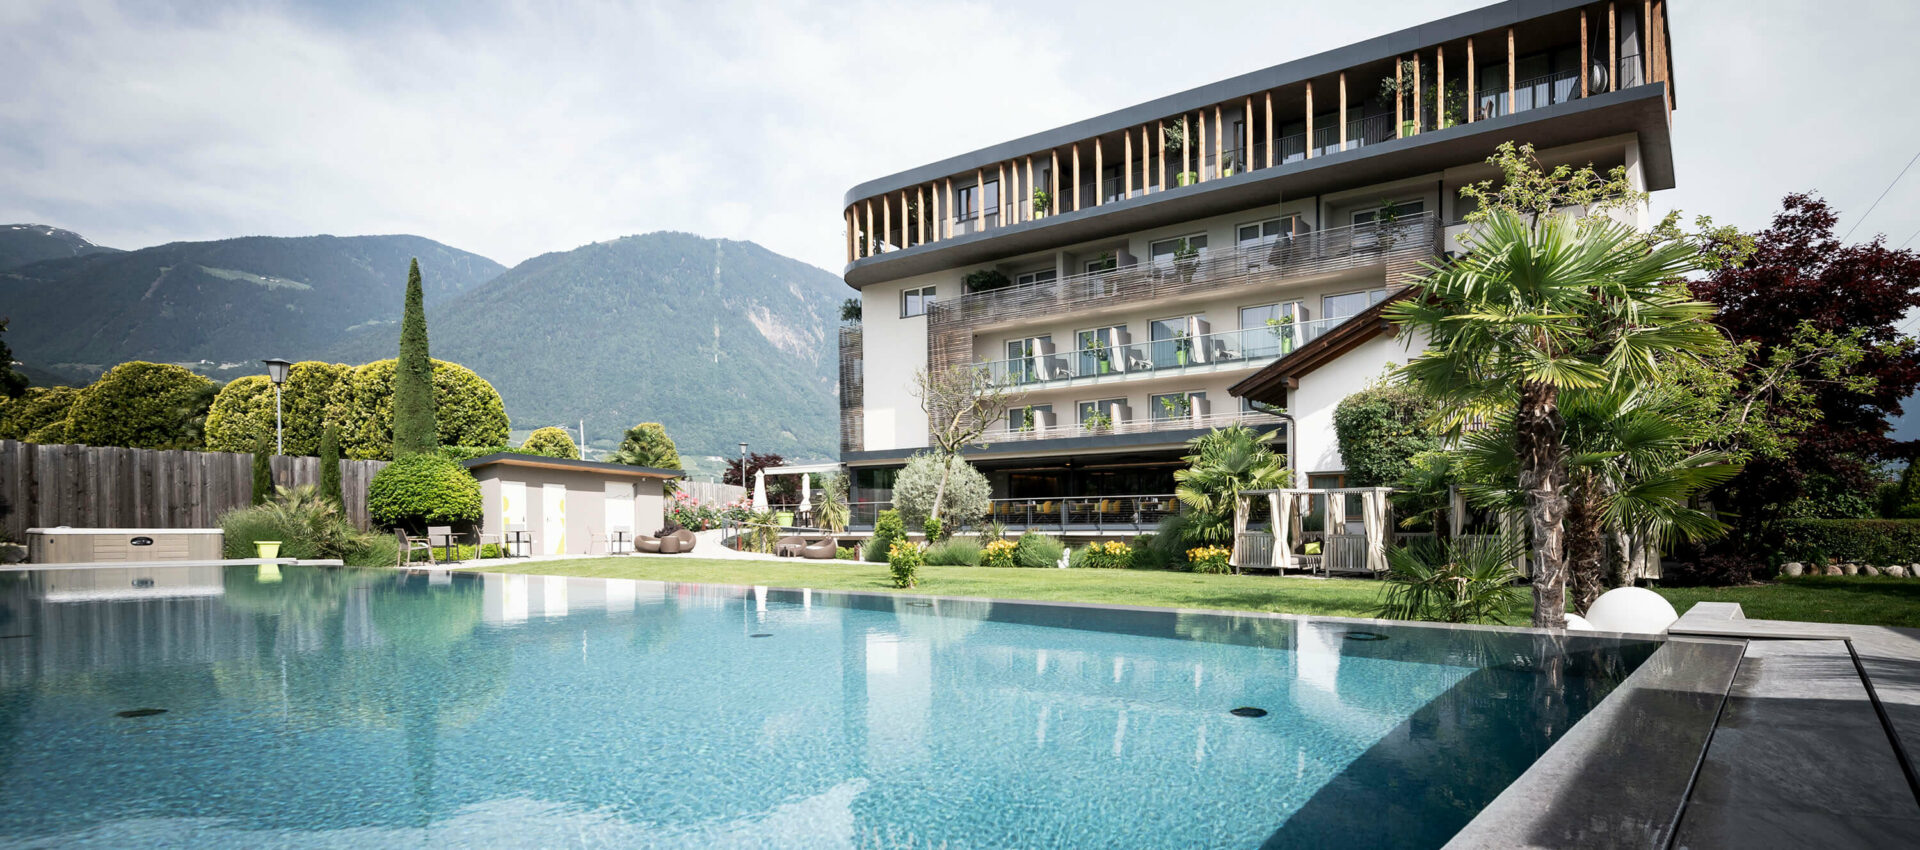 Wellnesshotel mit Pool bei Meran, mitten in Apfelwiesen im Meraner Land, Südtirol